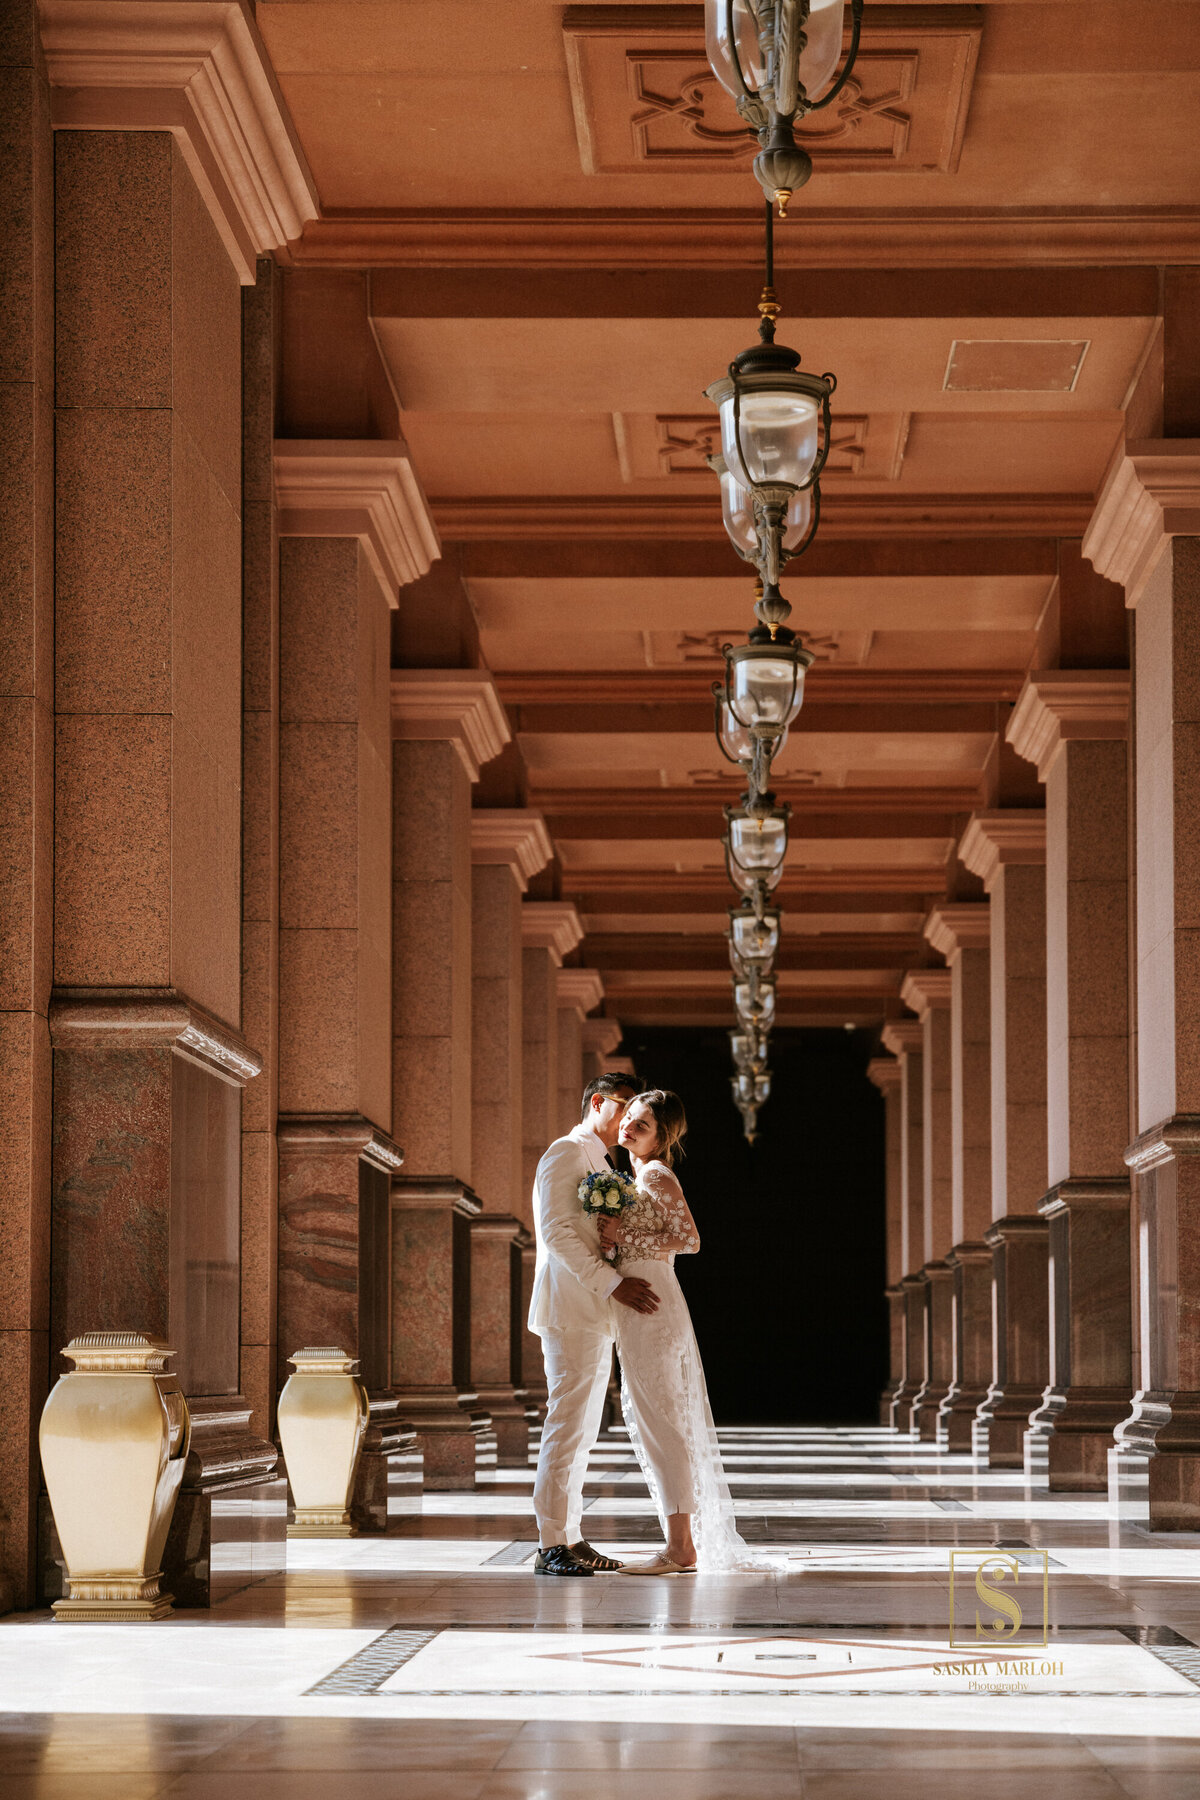 Emirates Palace Engagement Photos Couple Session by female  Abu Dhabi Wedding Photographer Saskia Marloh